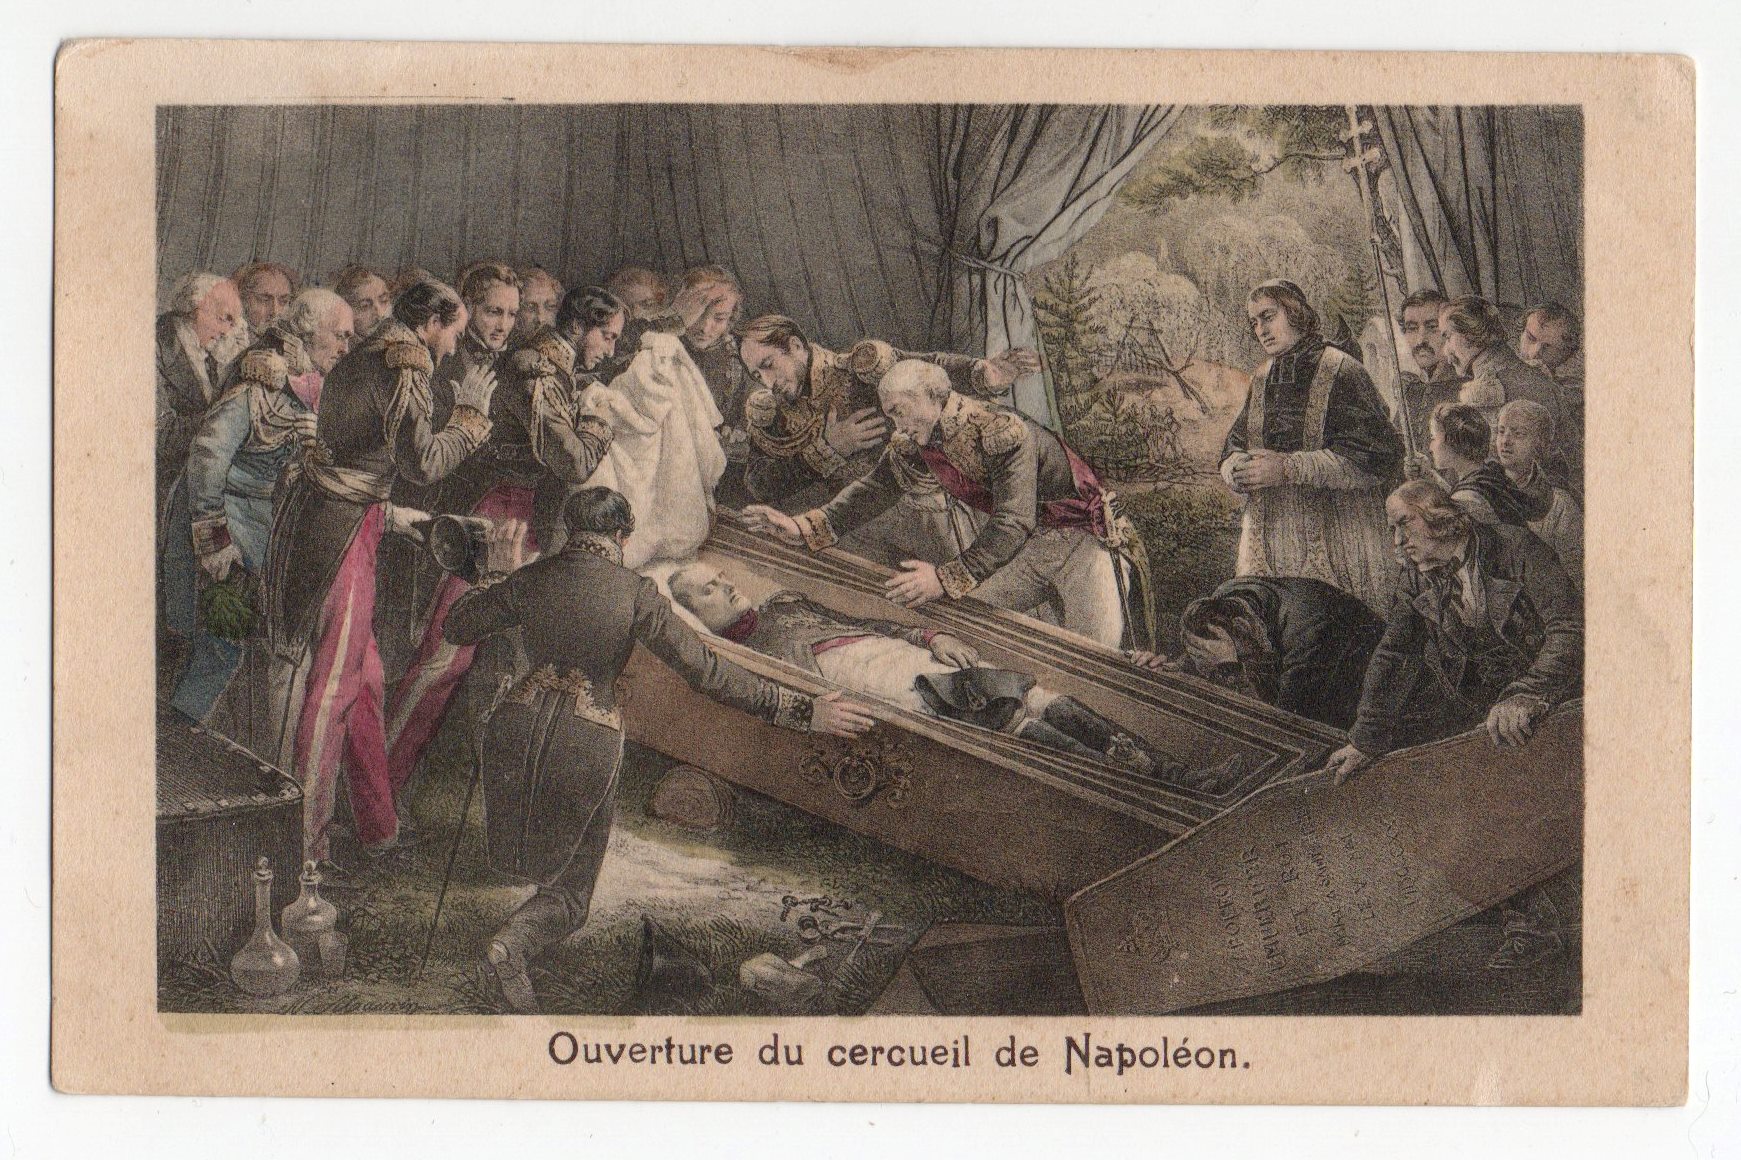 Поштова листівка. "Ouverture du cercueil de Napoléon"